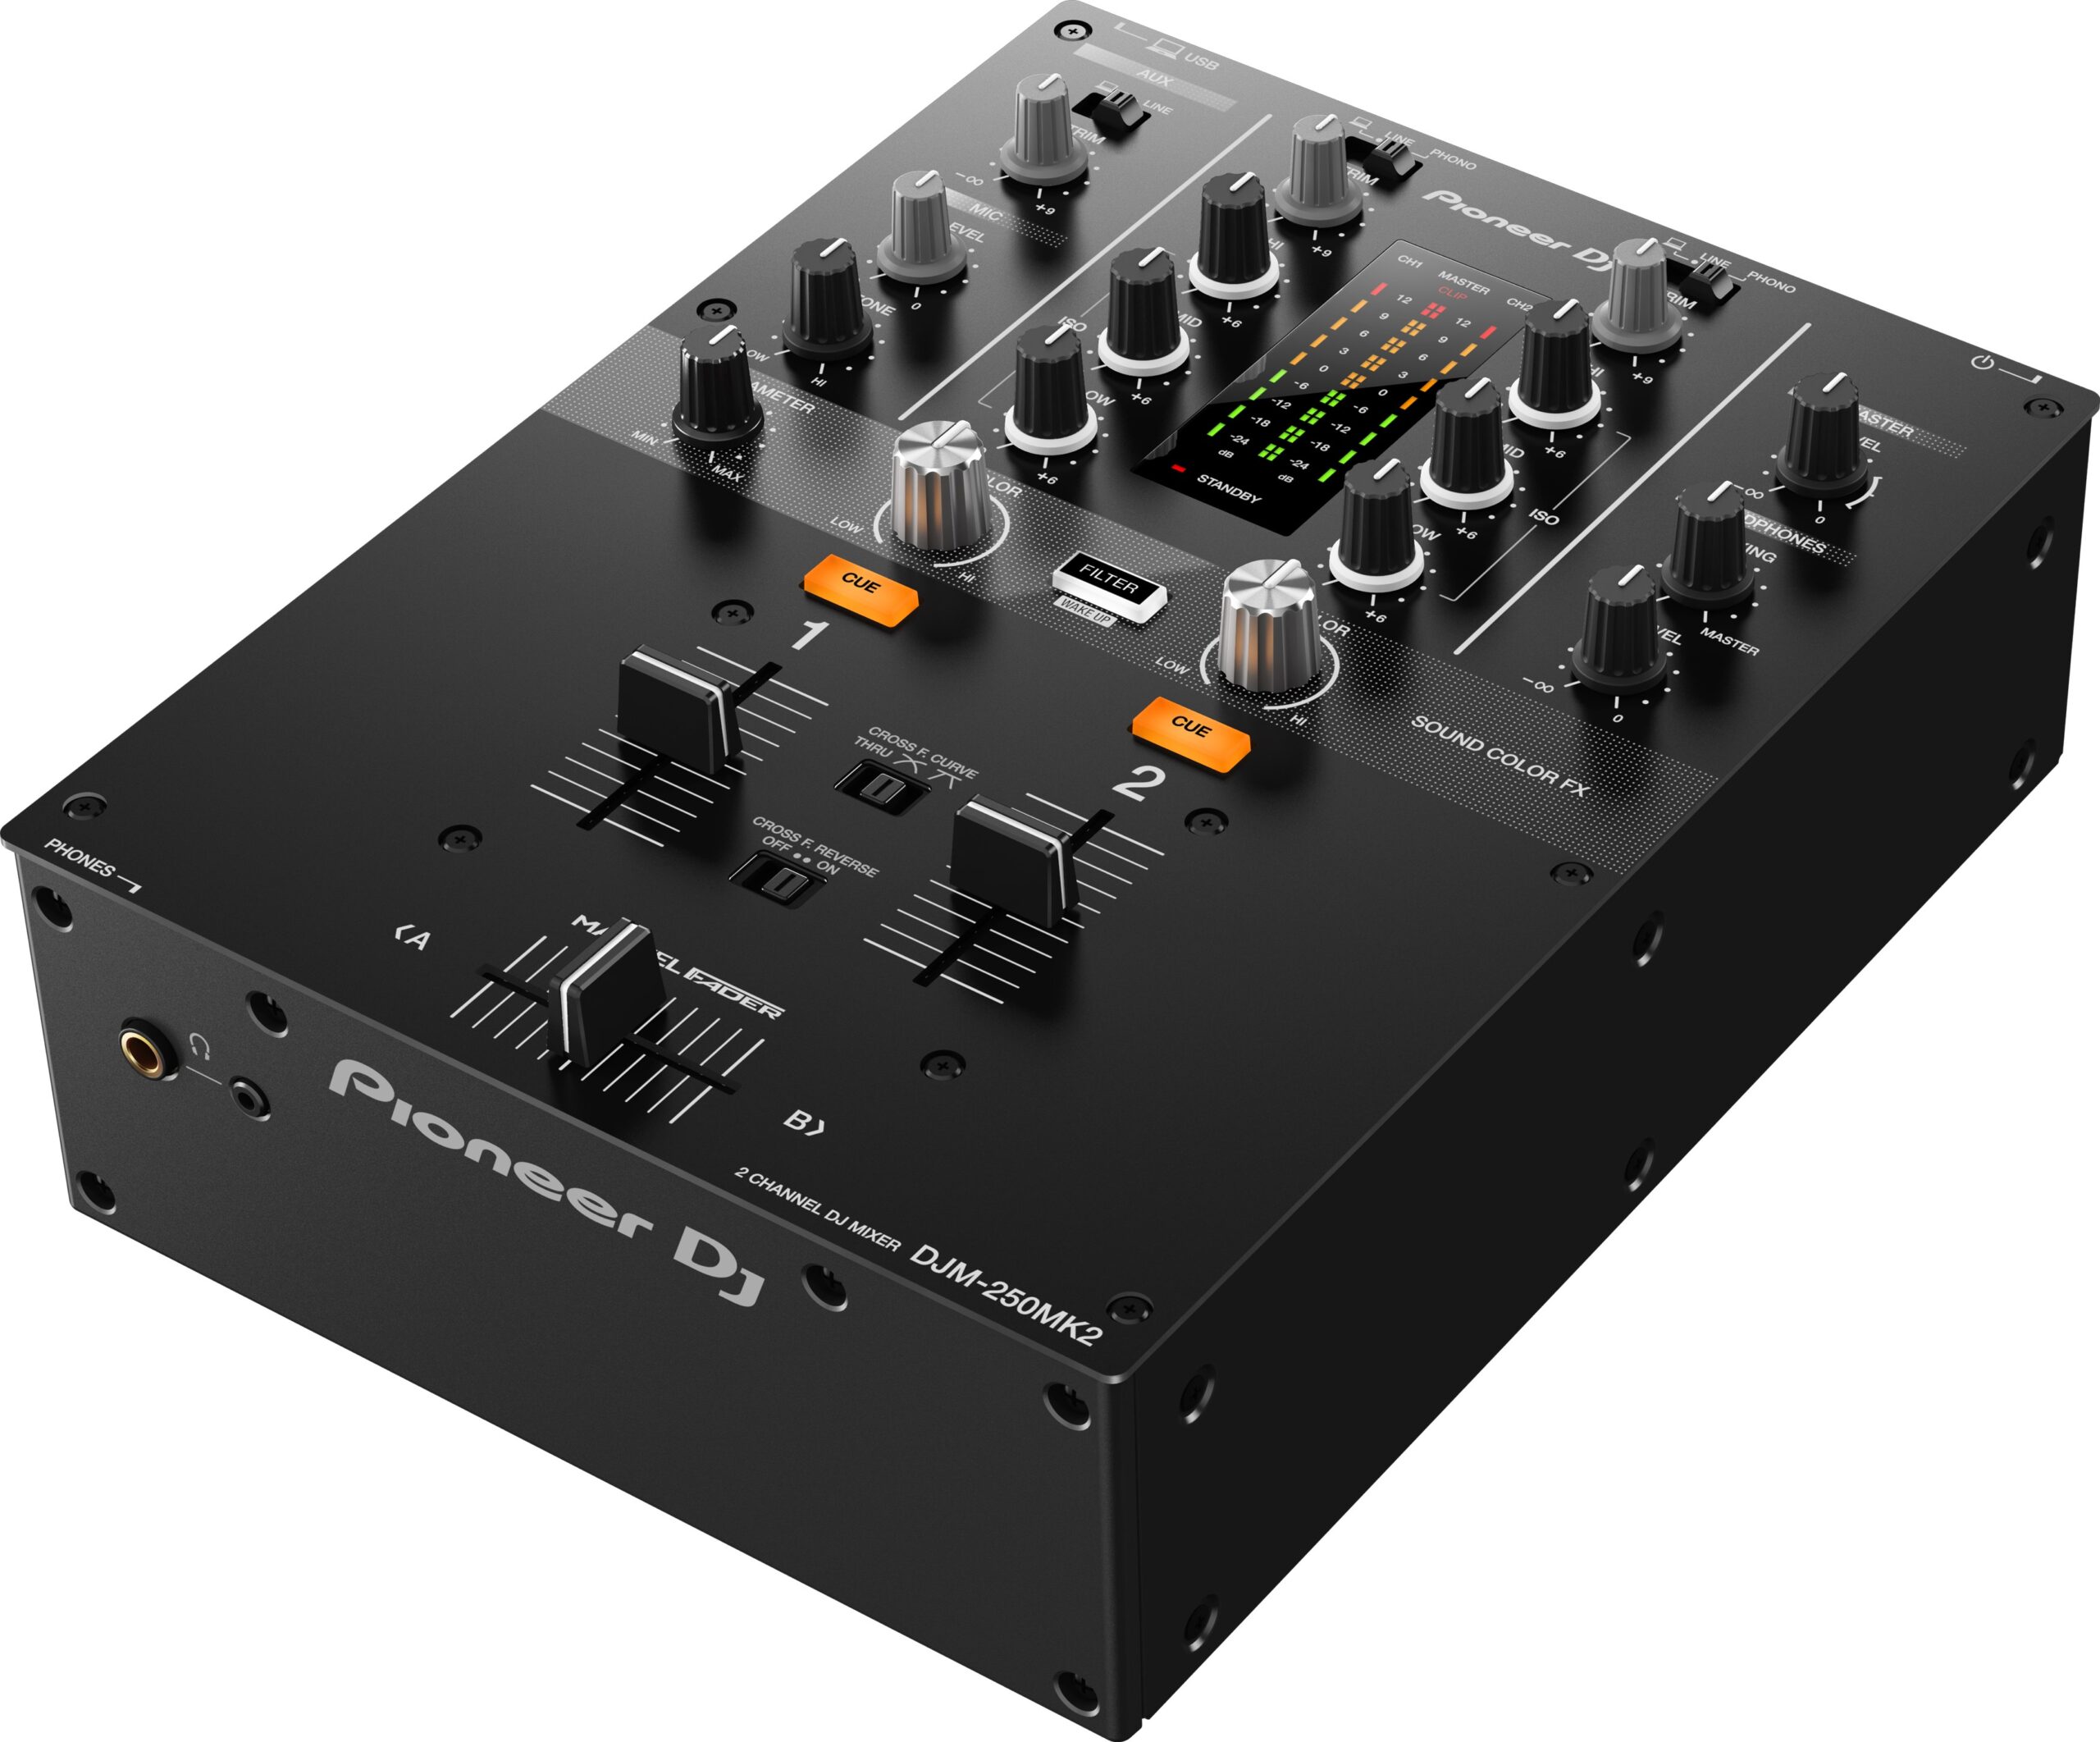 Pioneer DJ DJM-250MK2 2-channel DJ mixer